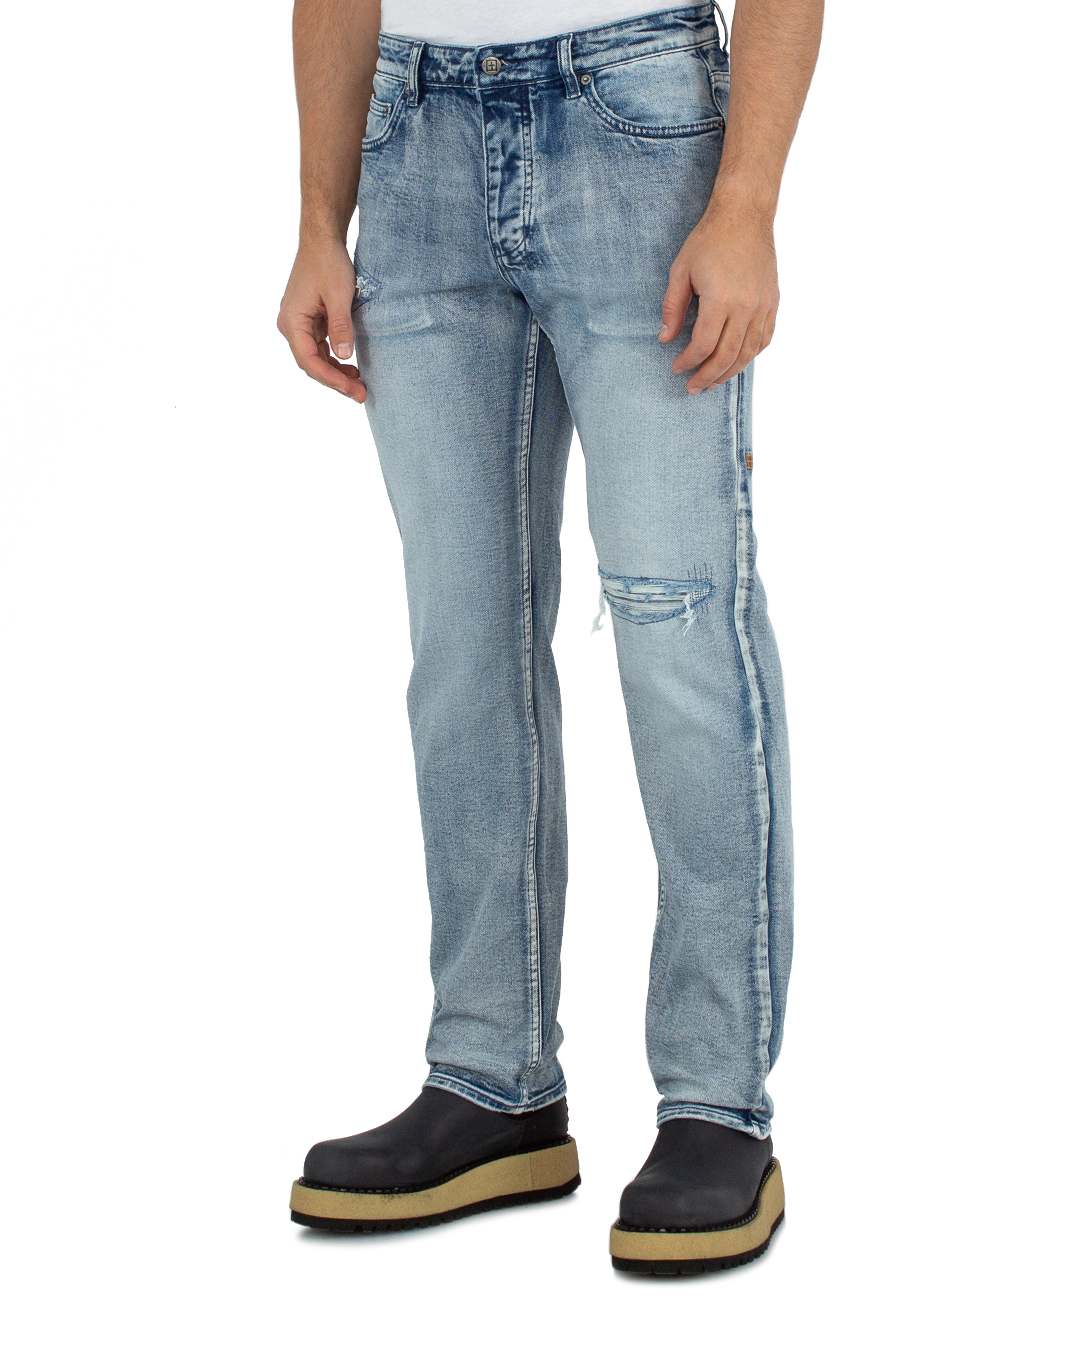 джинсы KSUBI MPF23DJ007 синий 31, размер 31 - фото 3